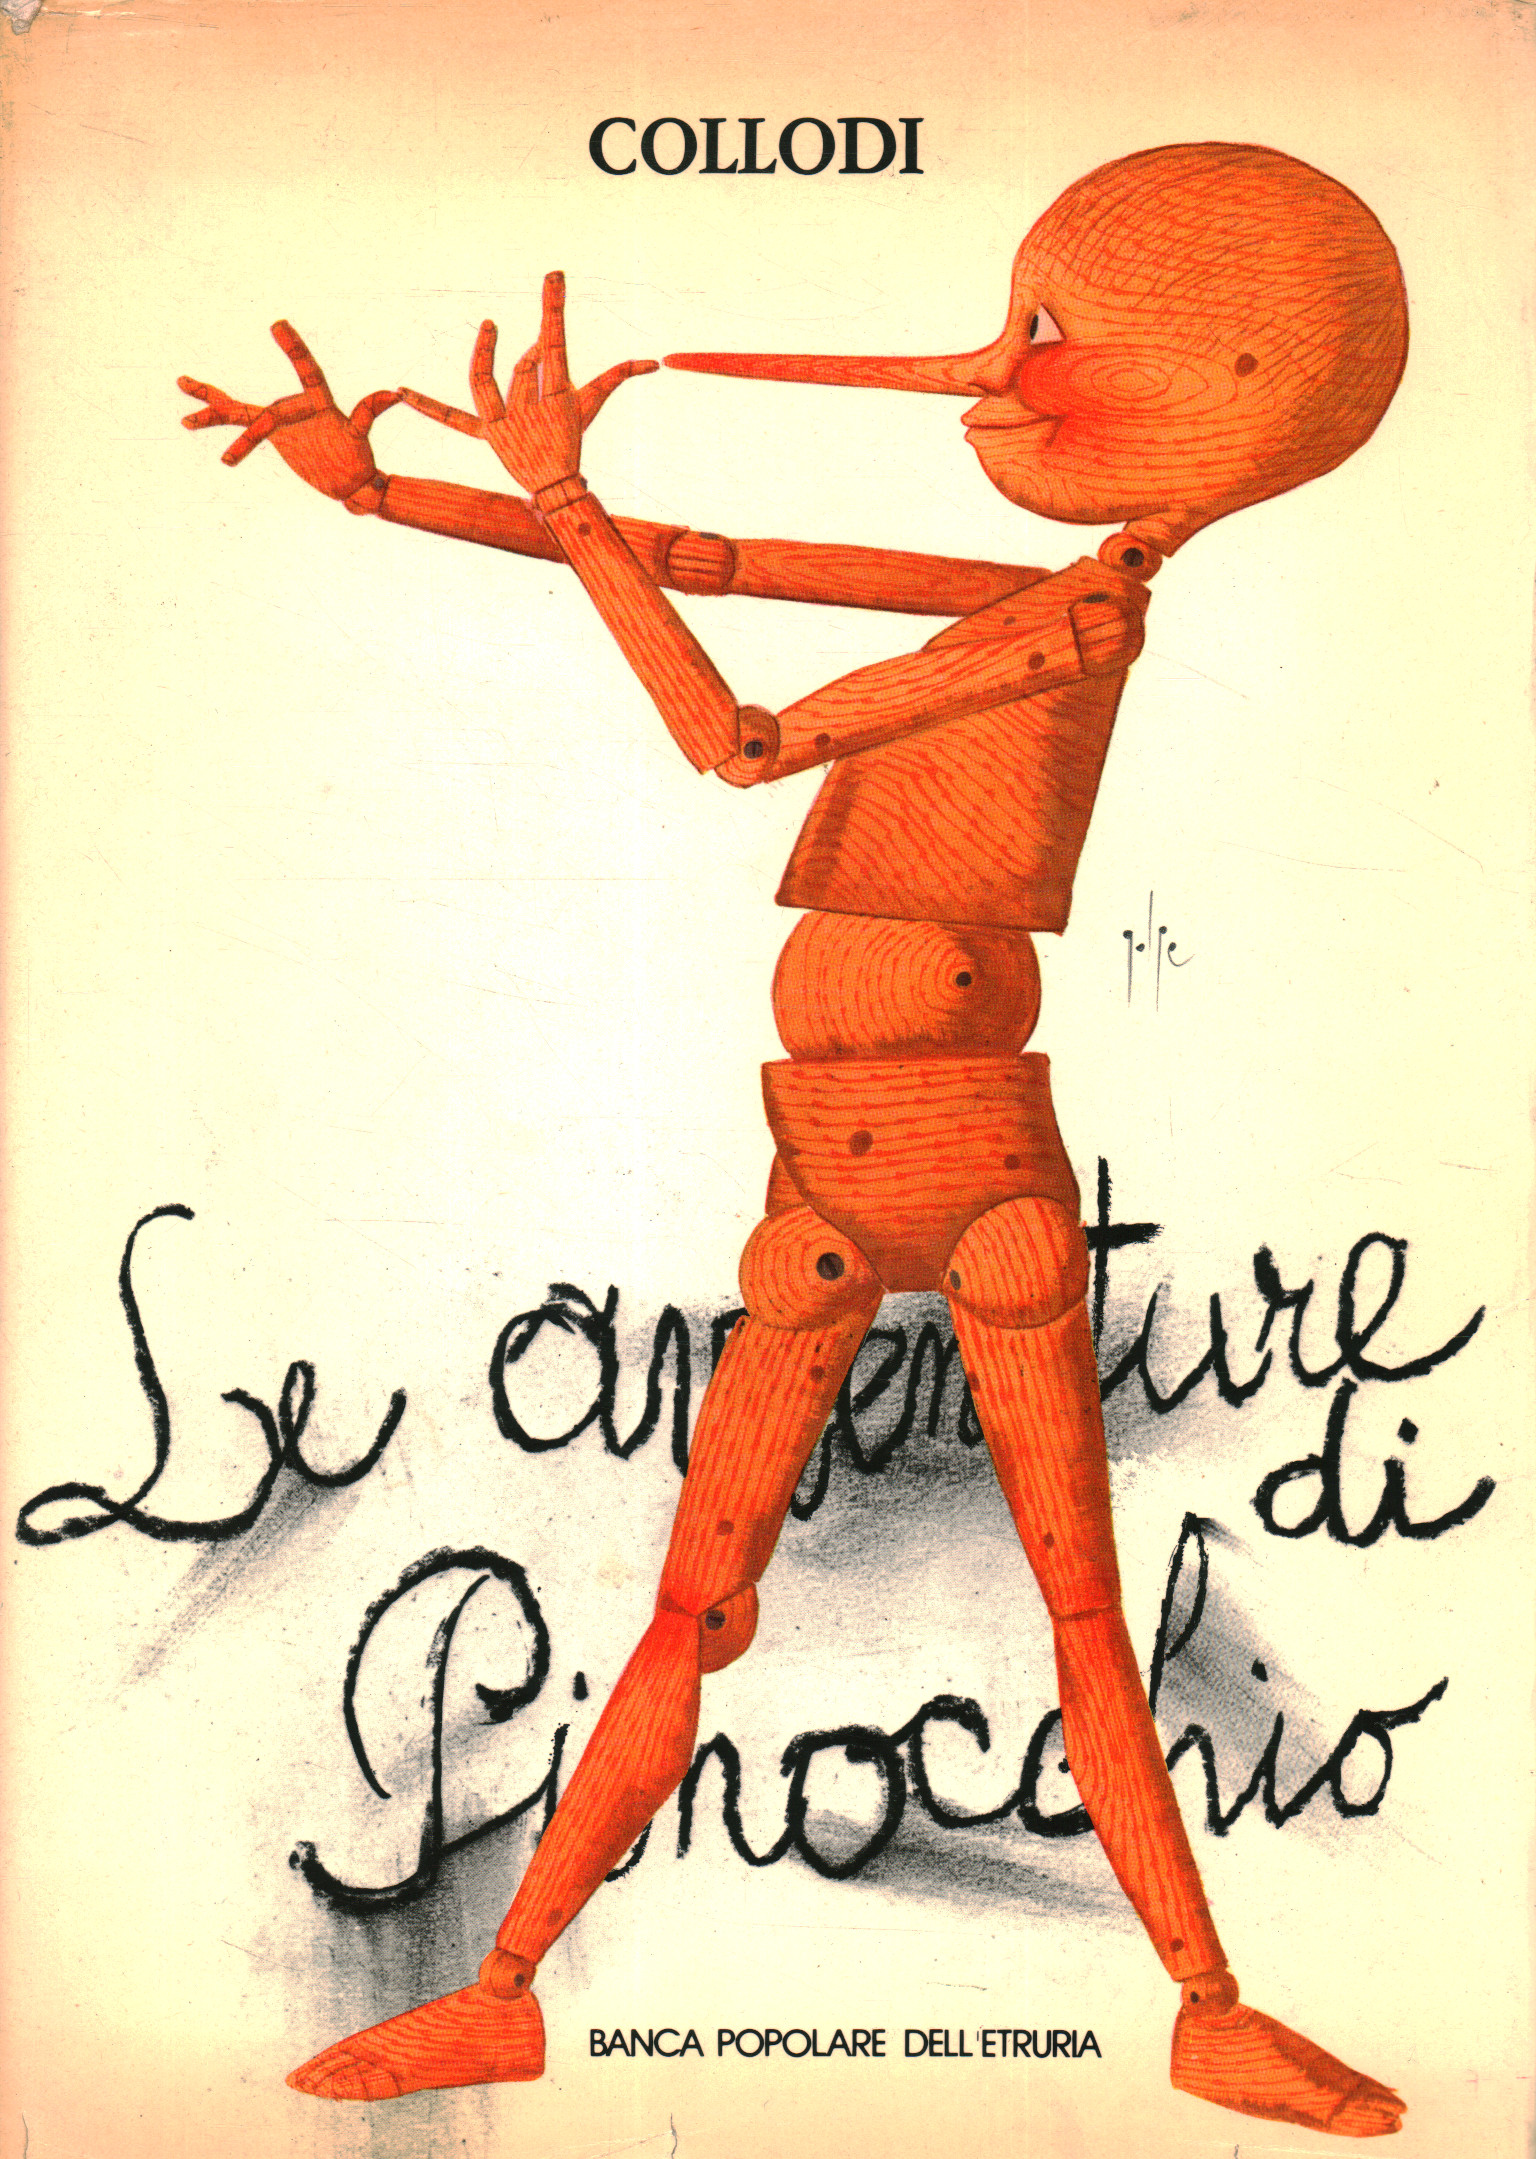 Le avventure di Pinocchio  Collodi, Golpe usato Libri per ragazzi  Illustrati